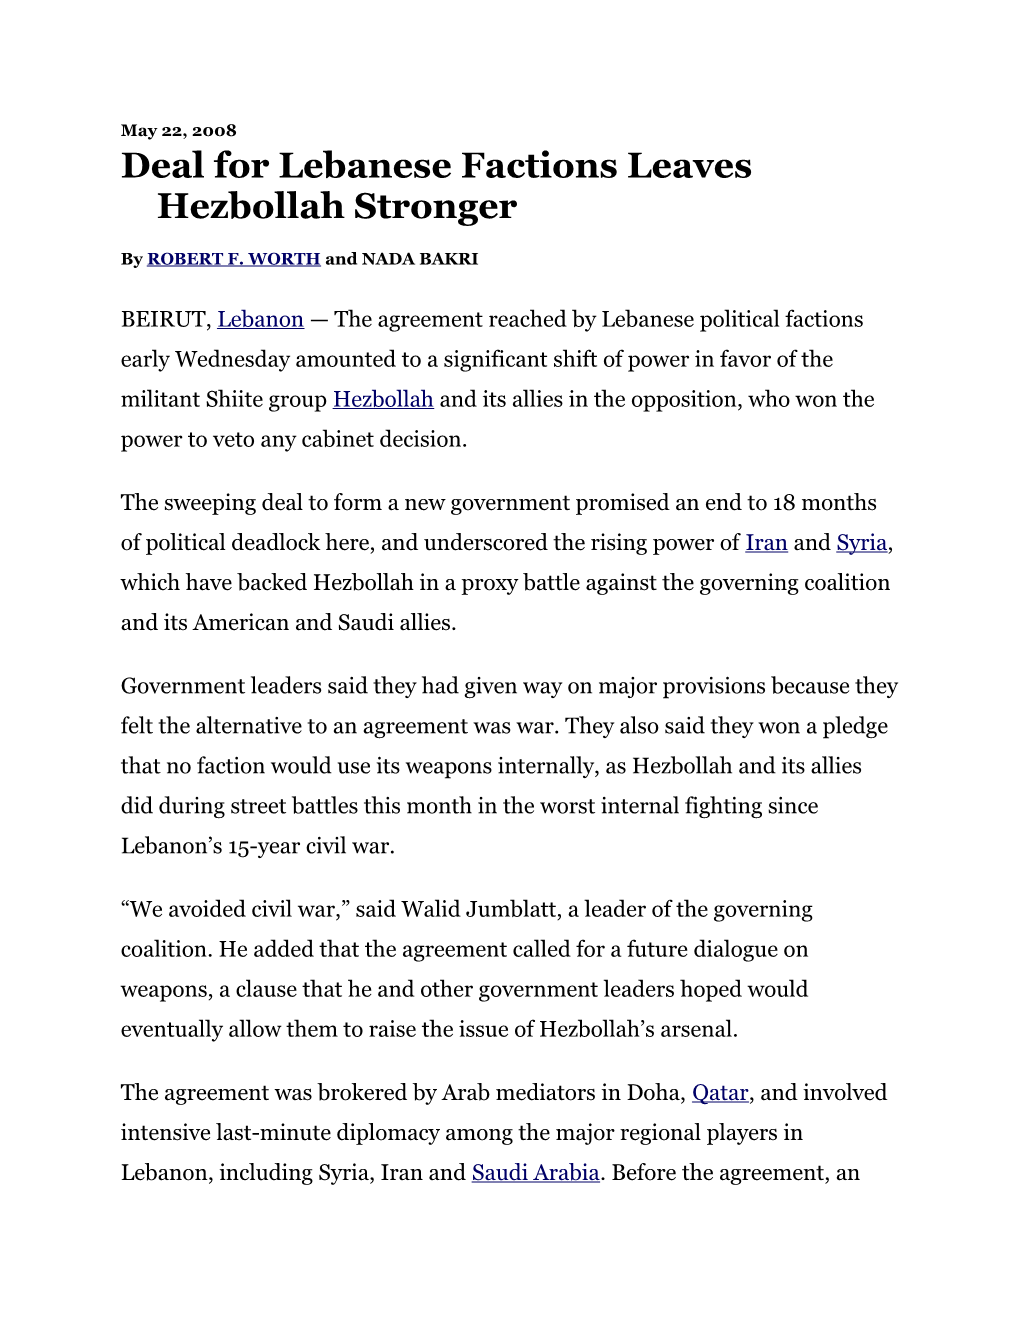 Deal for Lebanese Factions Leaves Hezbollah Stronger